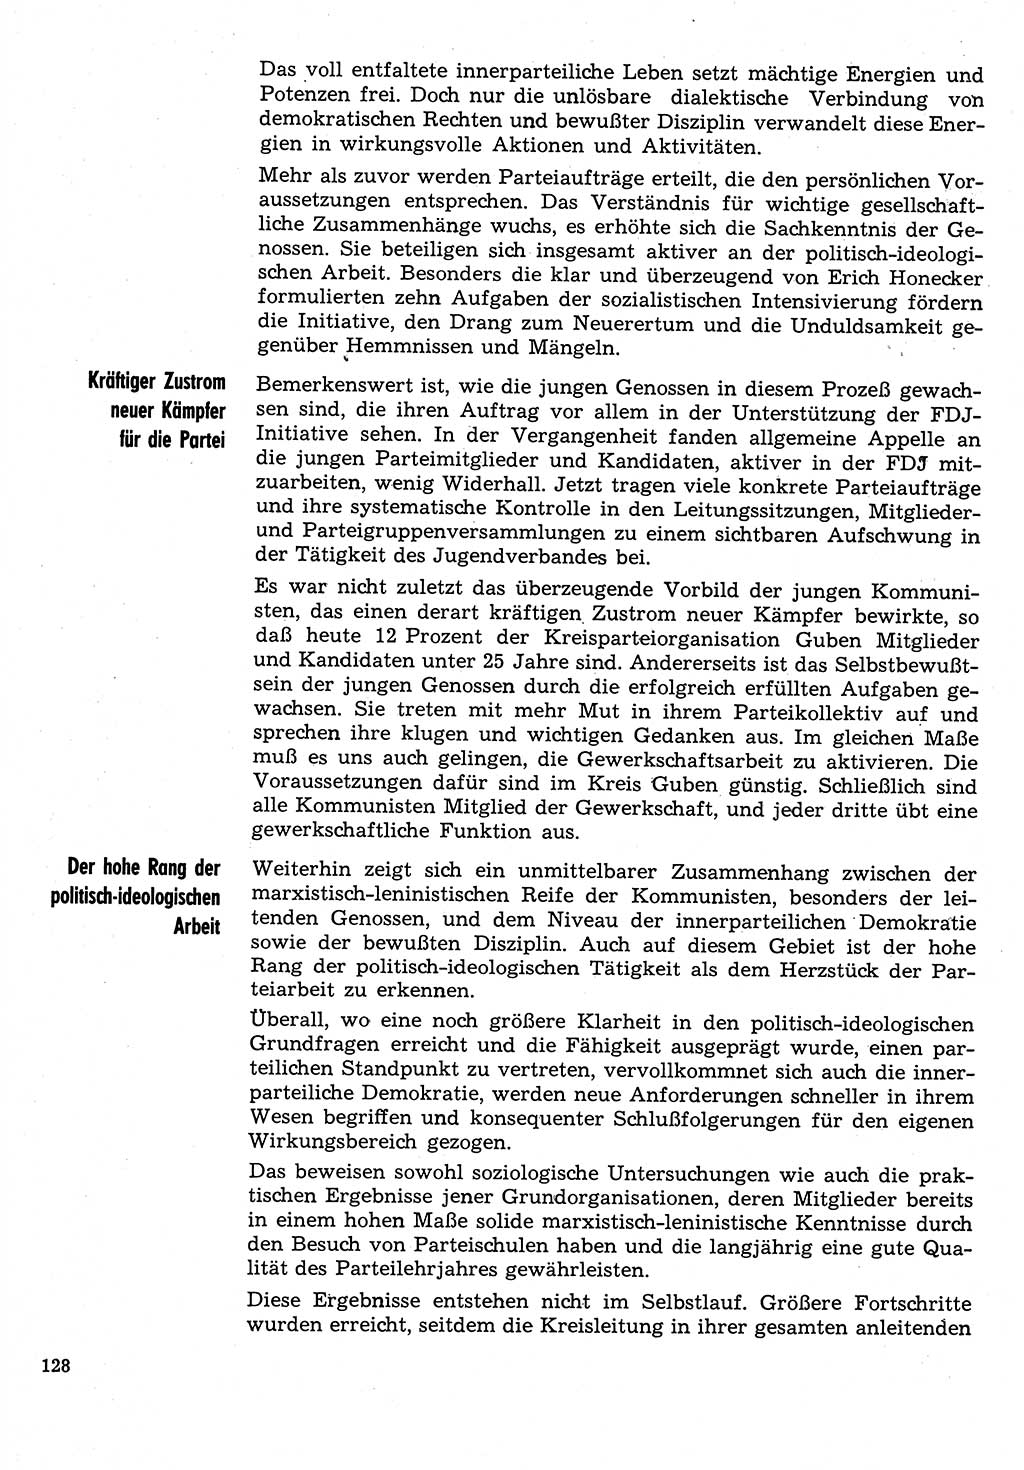 Neuer Weg (NW), Organ des Zentralkomitees (ZK) der SED (Sozialistische Einheitspartei Deutschlands) für Fragen des Parteilebens, 31. Jahrgang [Deutsche Demokratische Republik (DDR)] 1976, Seite 128 (NW ZK SED DDR 1976, S. 128)